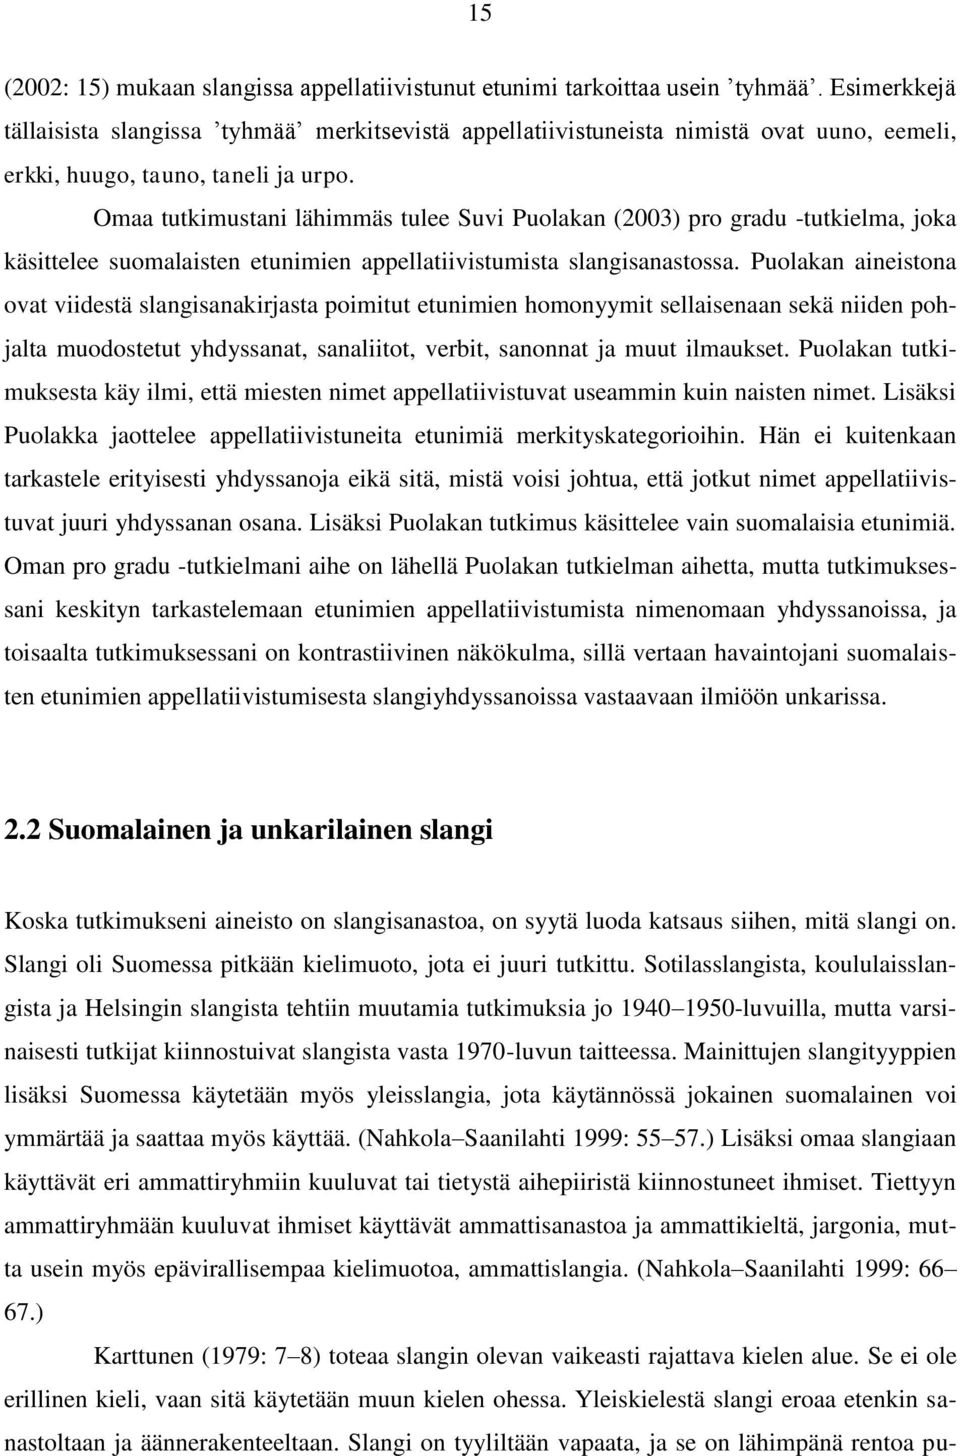 Omaa tutkimustani lähimmäs tulee Suvi Puolakan (2003) pro gradu -tutkielma, joka käsittelee suomalaisten etunimien appellatiivistumista slangisanastossa.